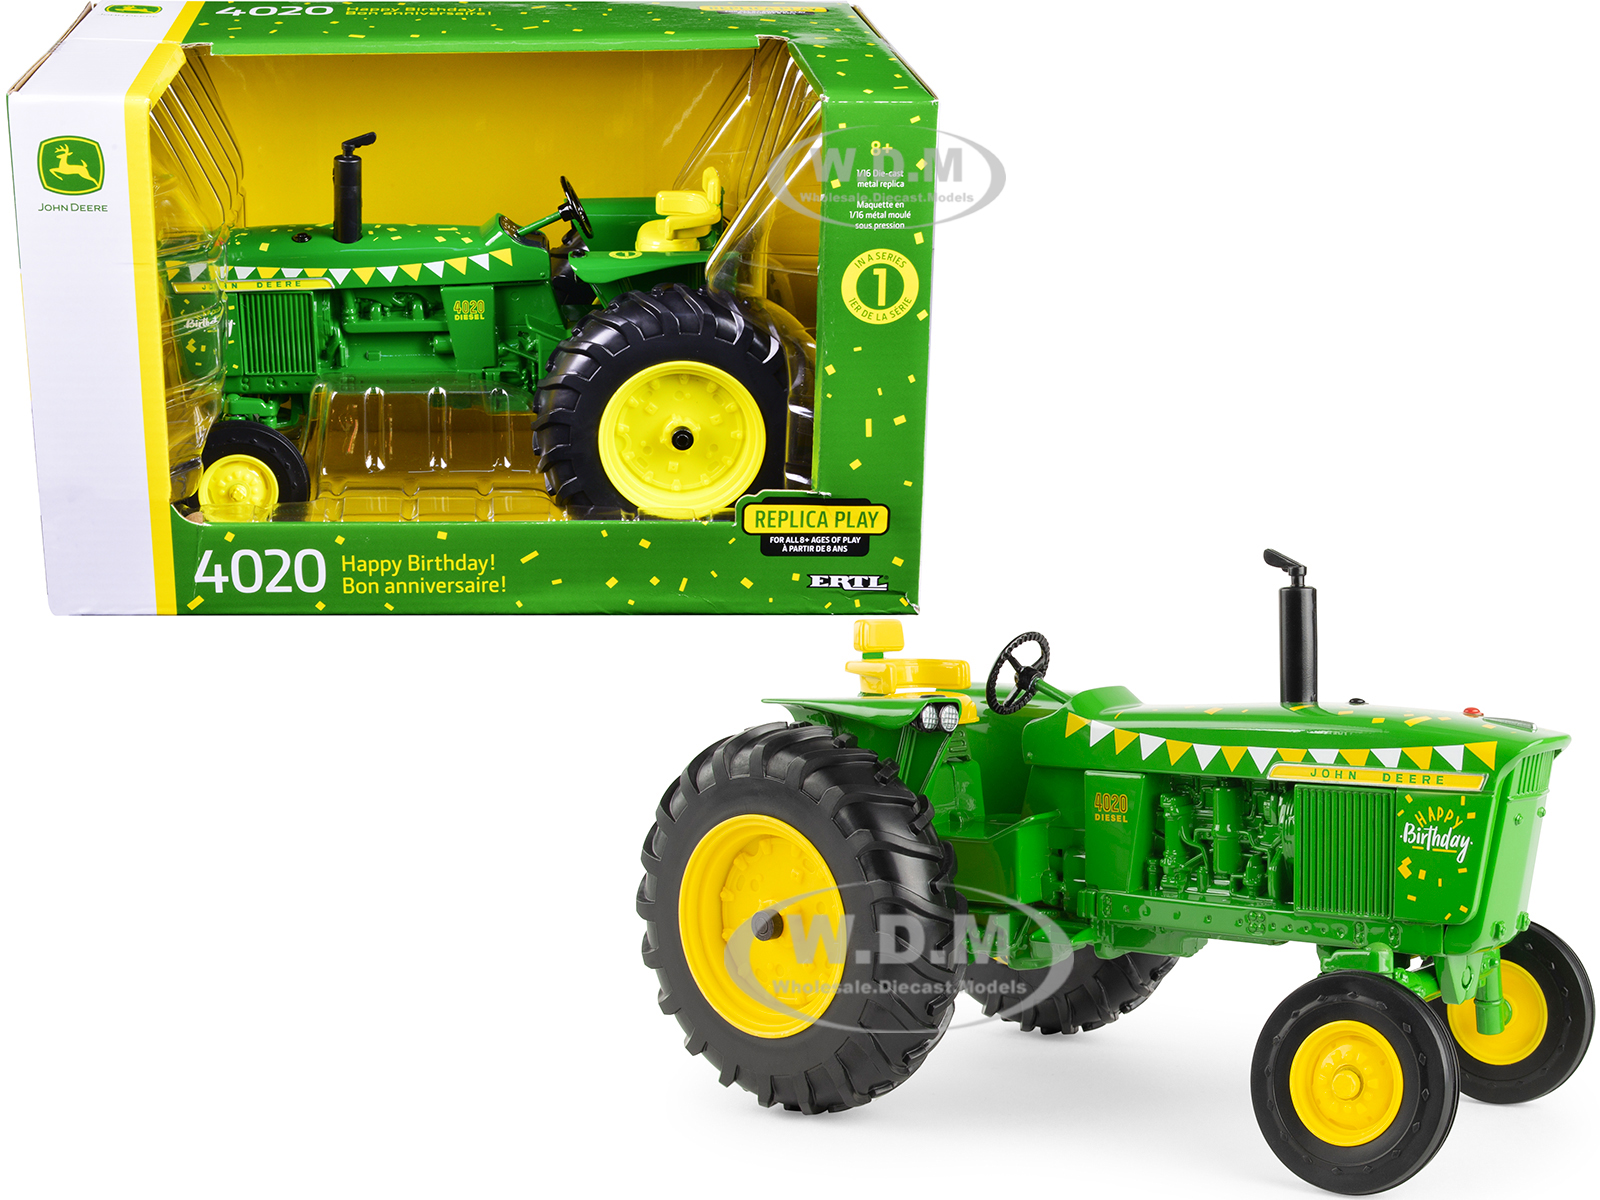 John Deere 4020 Diesel Tractor Green "Happy Birthday" Edition "Replica Play" Series 1/16 Diecast Model by ERTL TOMY